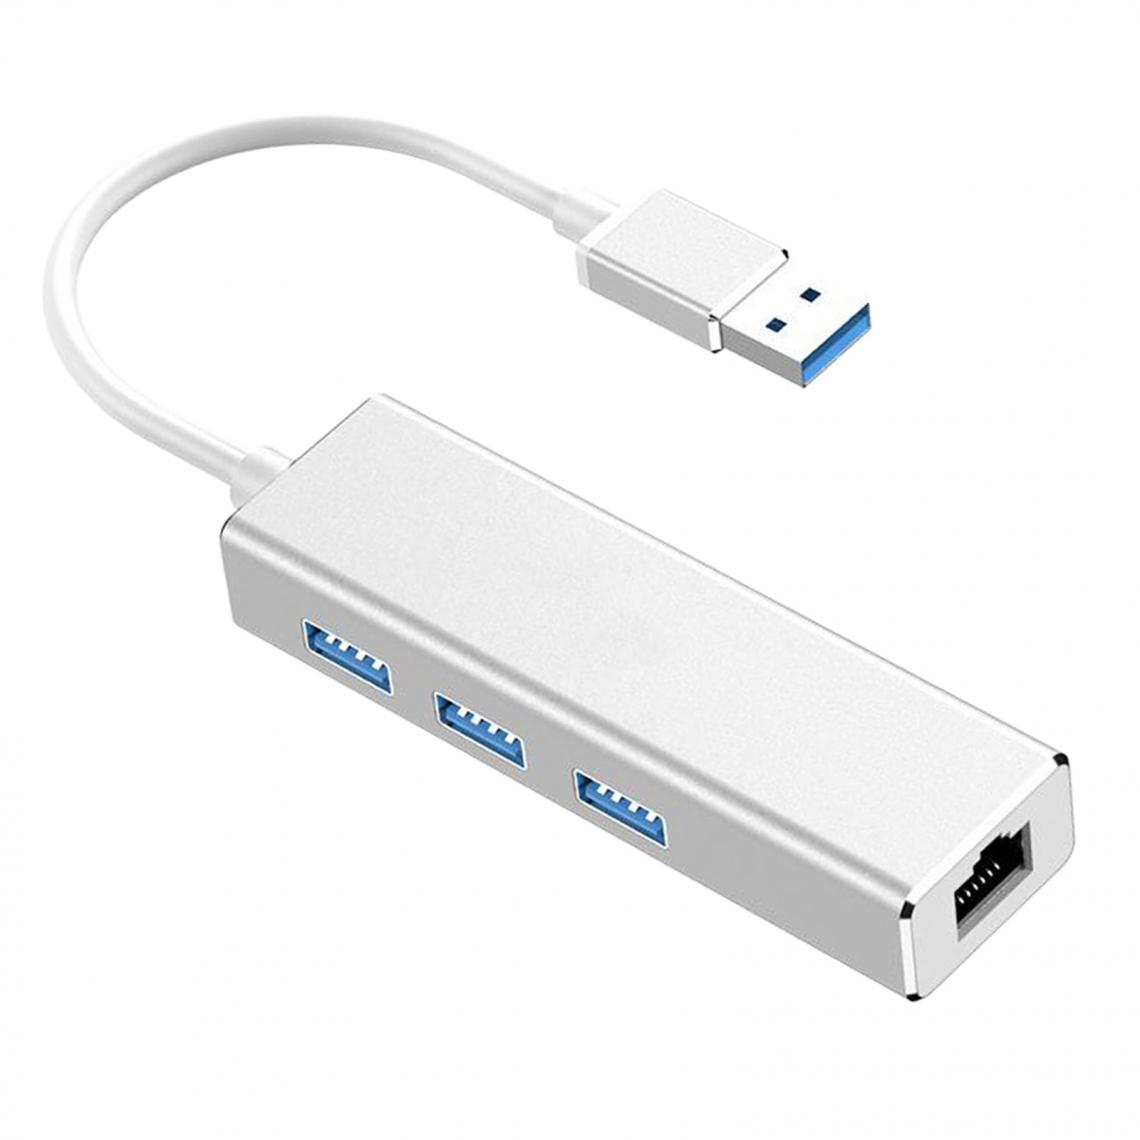 marque generique - Adaptateur Réseau USB 3.0 Gigabit Ethernet Adaptateur USB 1000Mbps Pour Ordinateur Portable Argent - Hub